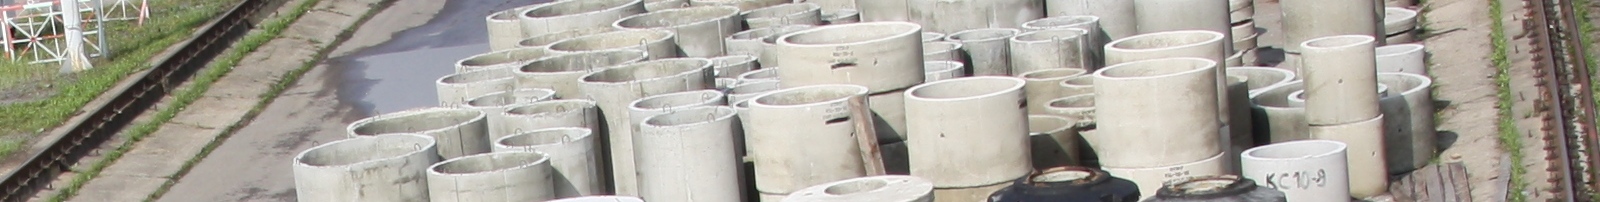 Опорные плиты теплотрасс- Завод железобетонных изделий МСК